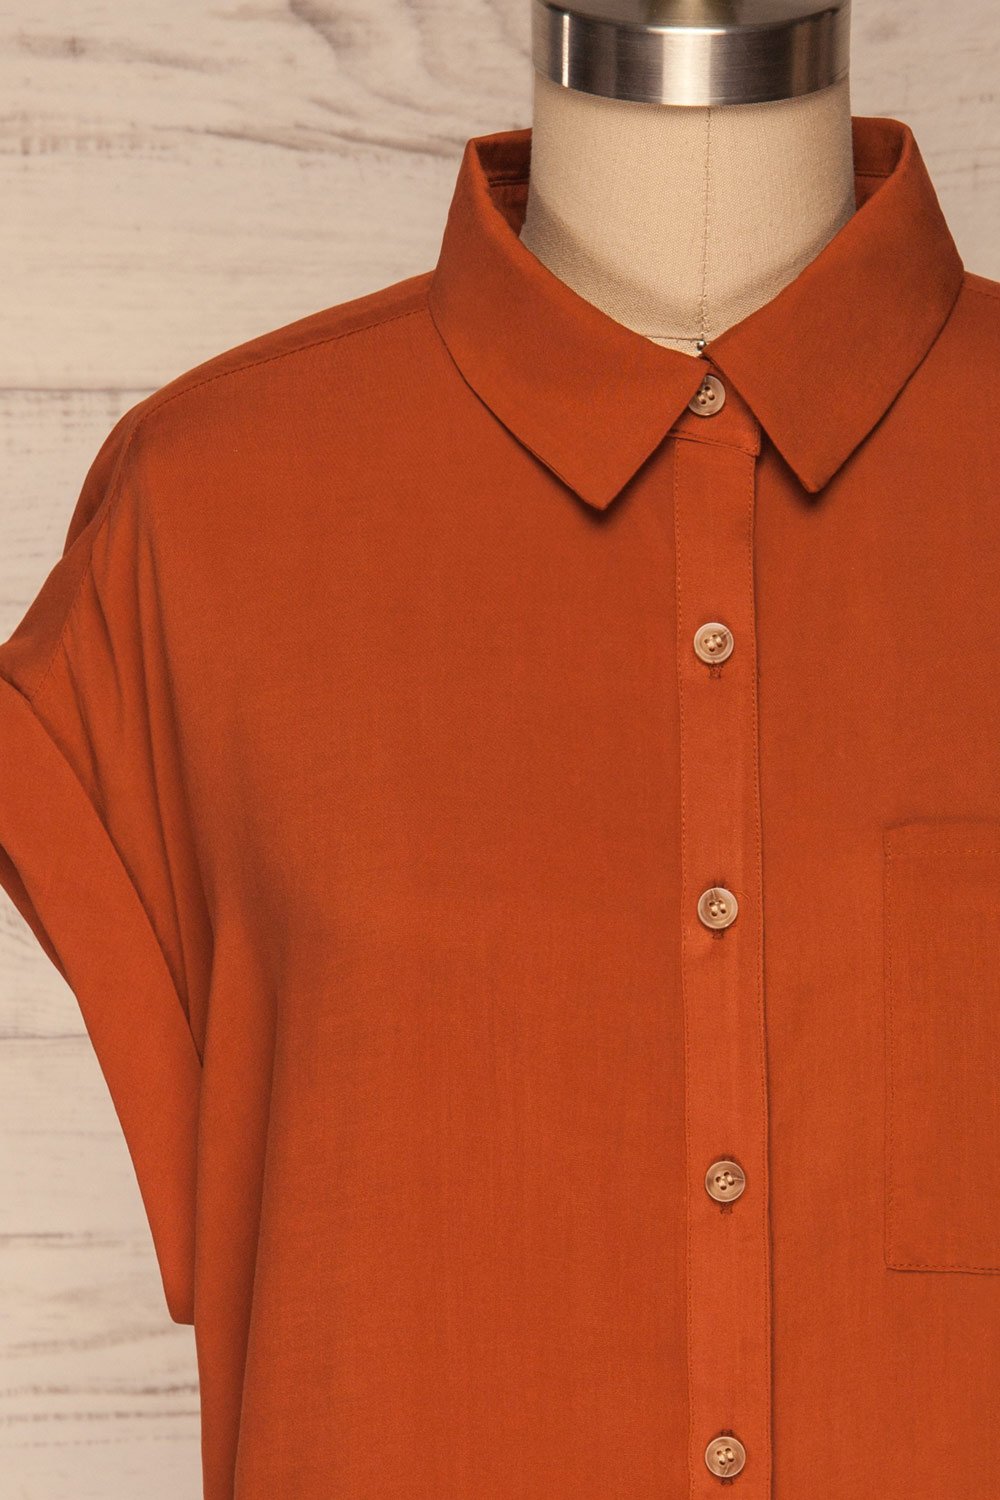 Eupen Orange Rust Short Sleeved Blouse front close up | La petite garçonne